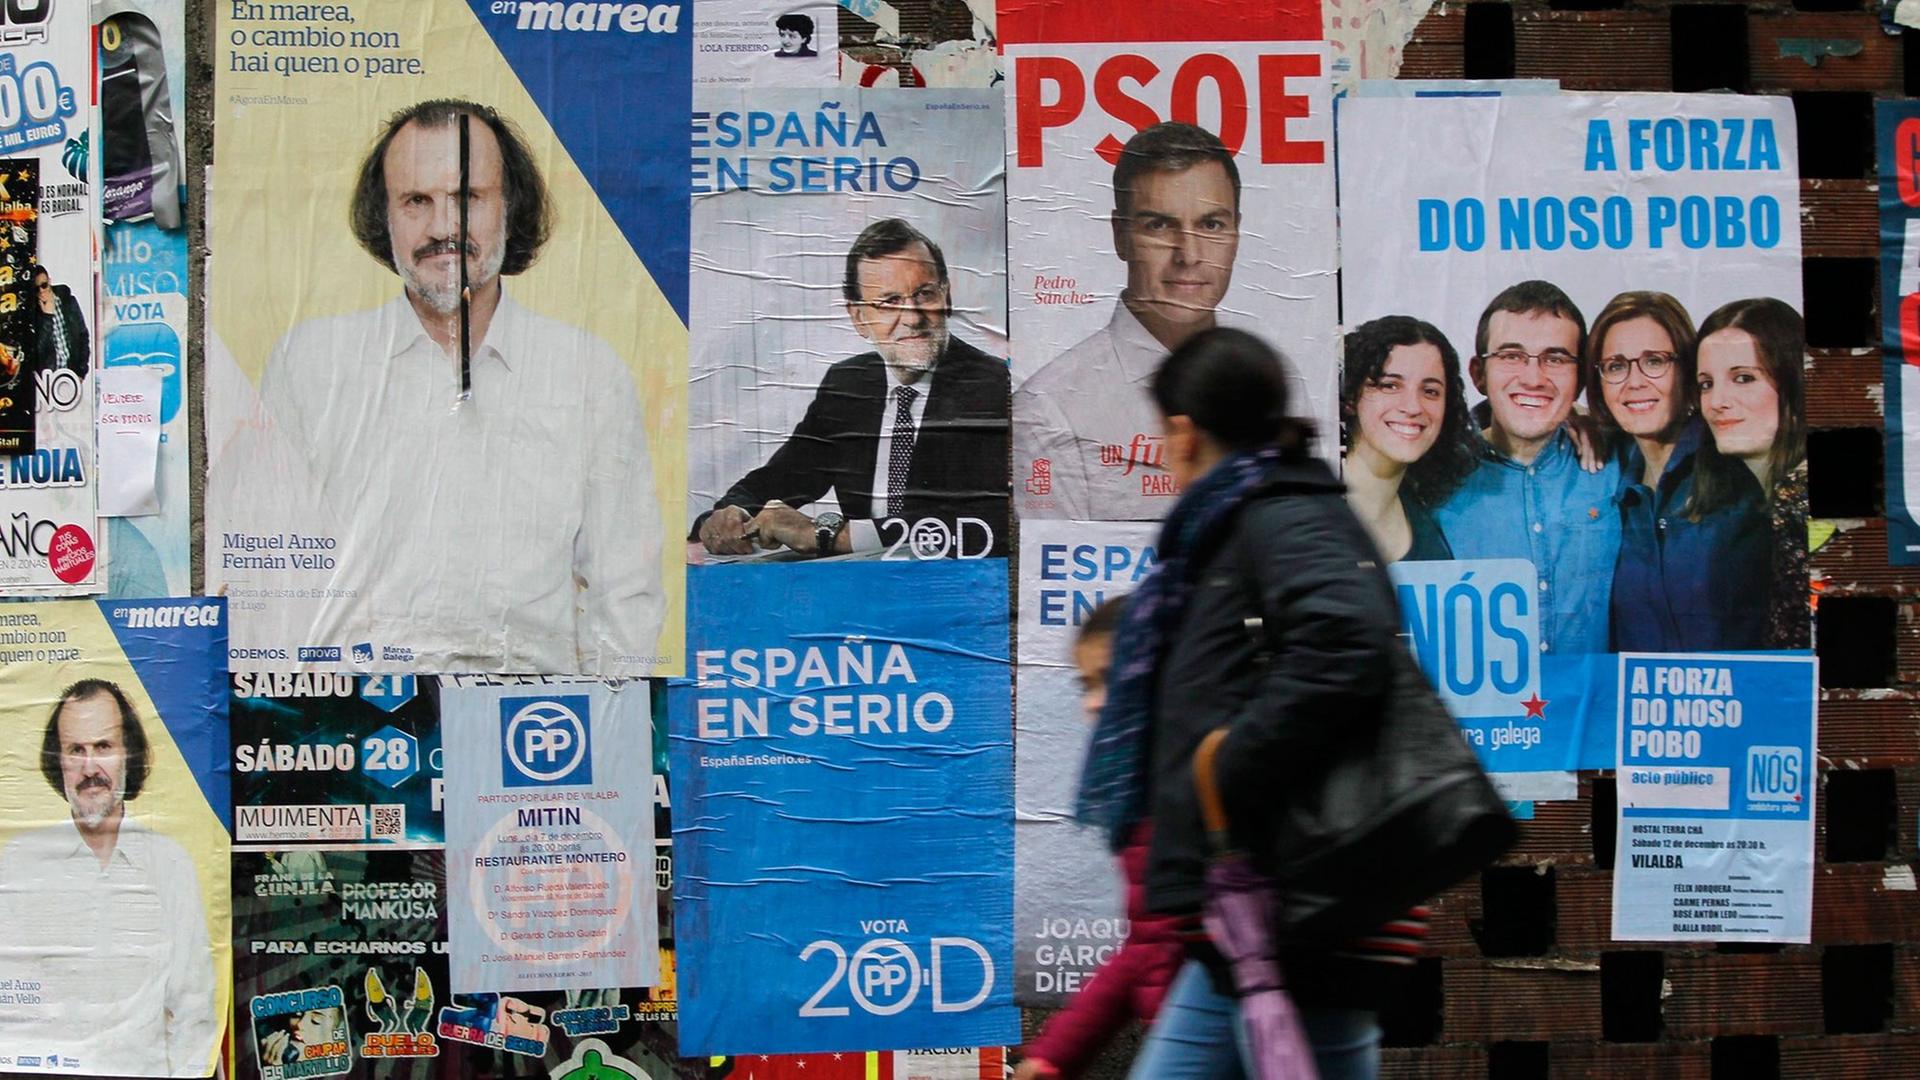 Wahlplakate zur Parlamentswahl in Spanien am 20. Dezember